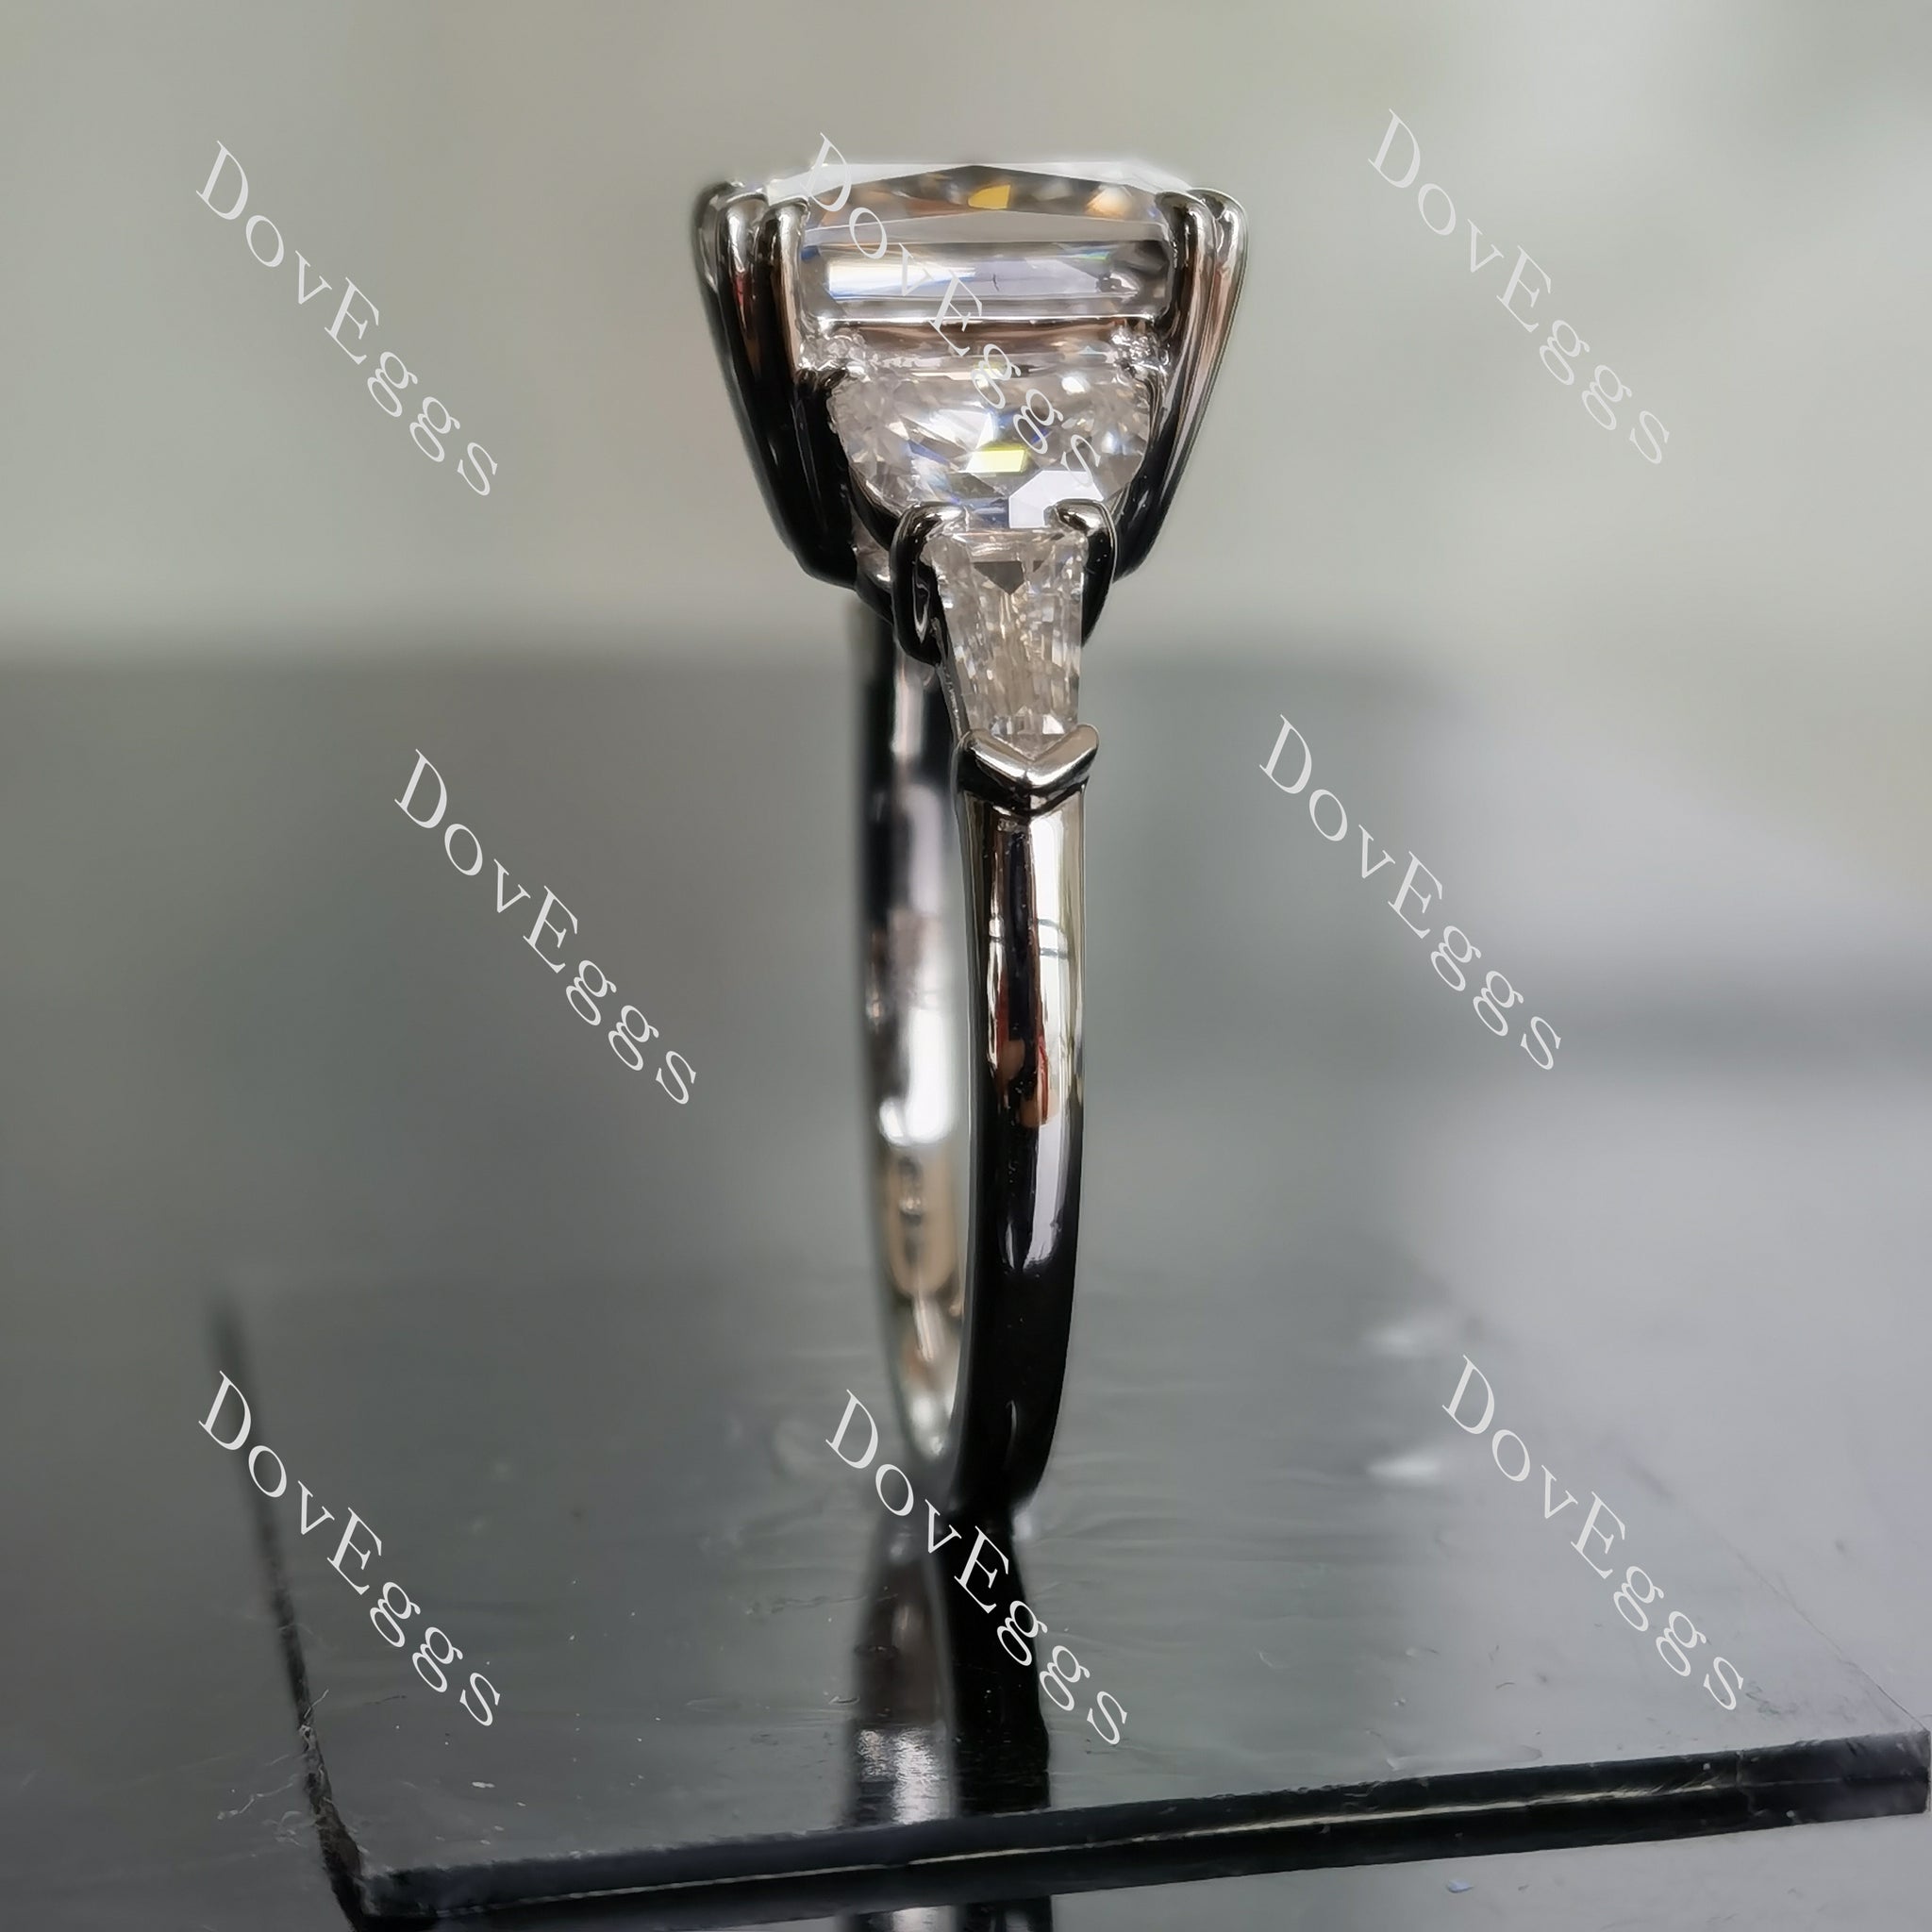 doveggs radiant side stones moissanite engagement ring for women